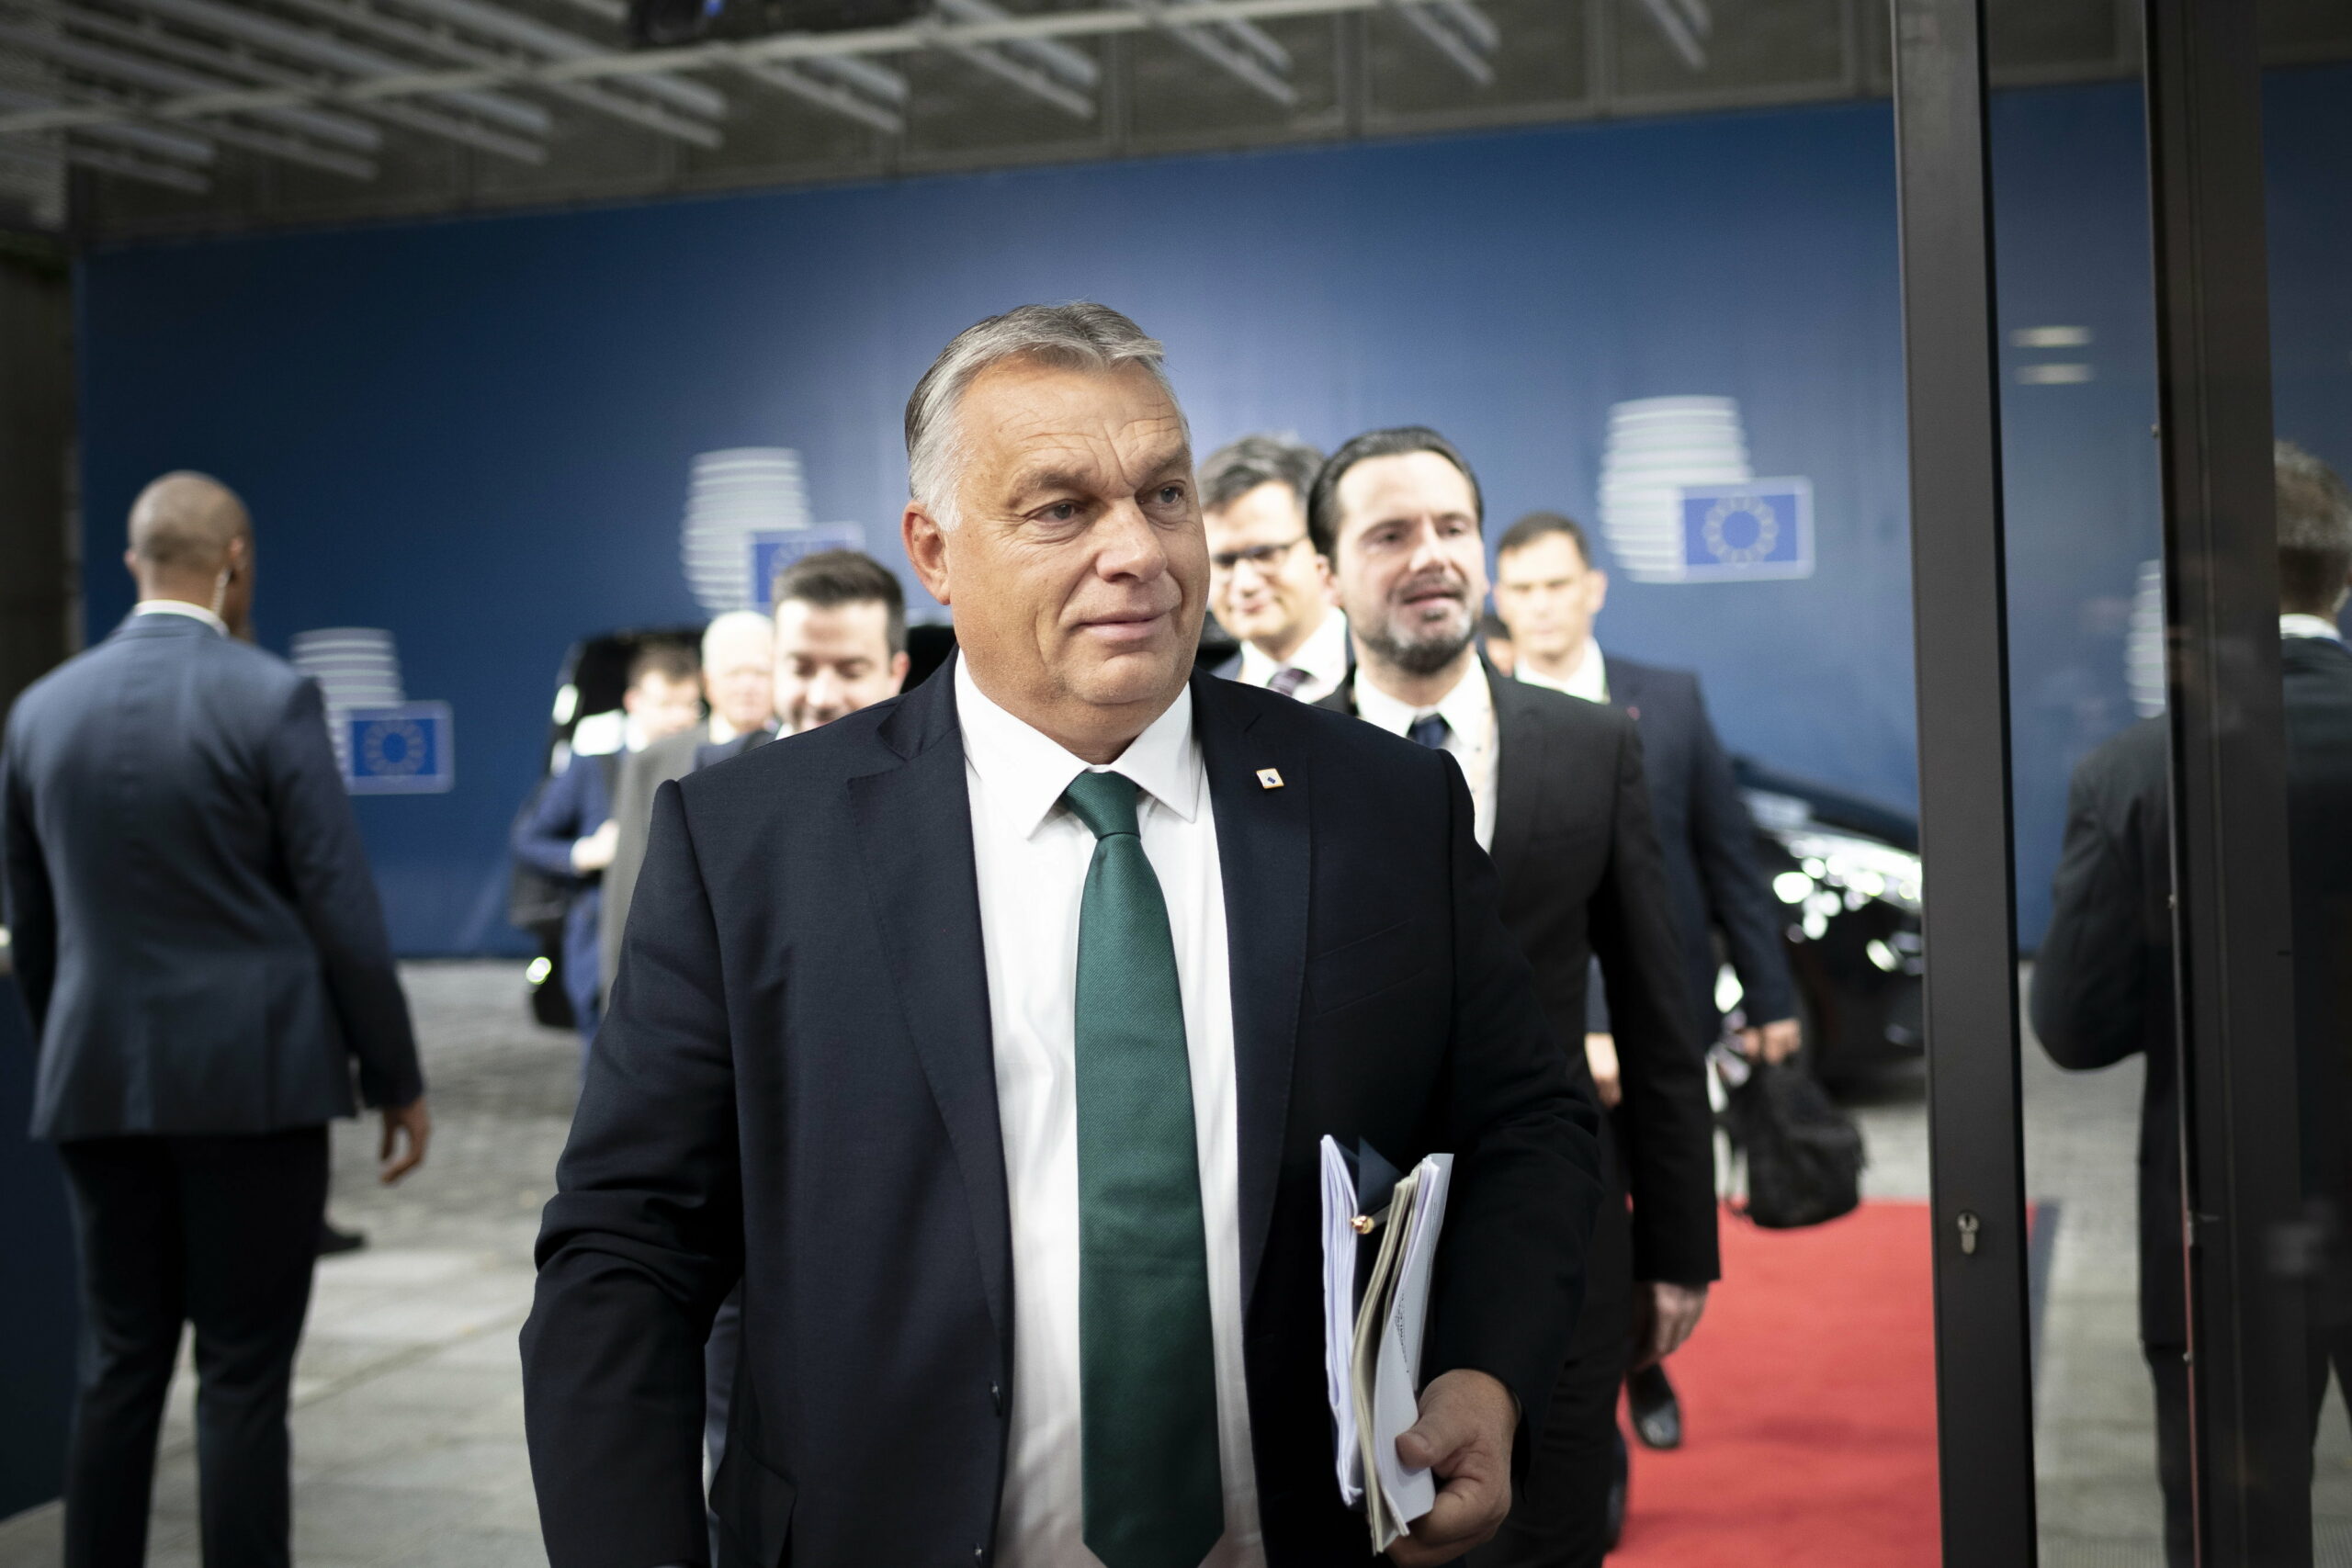 Közel a megállapodás Brüsszellel az uniós pénzek ügyében Orbán uniós megbízottja szerint